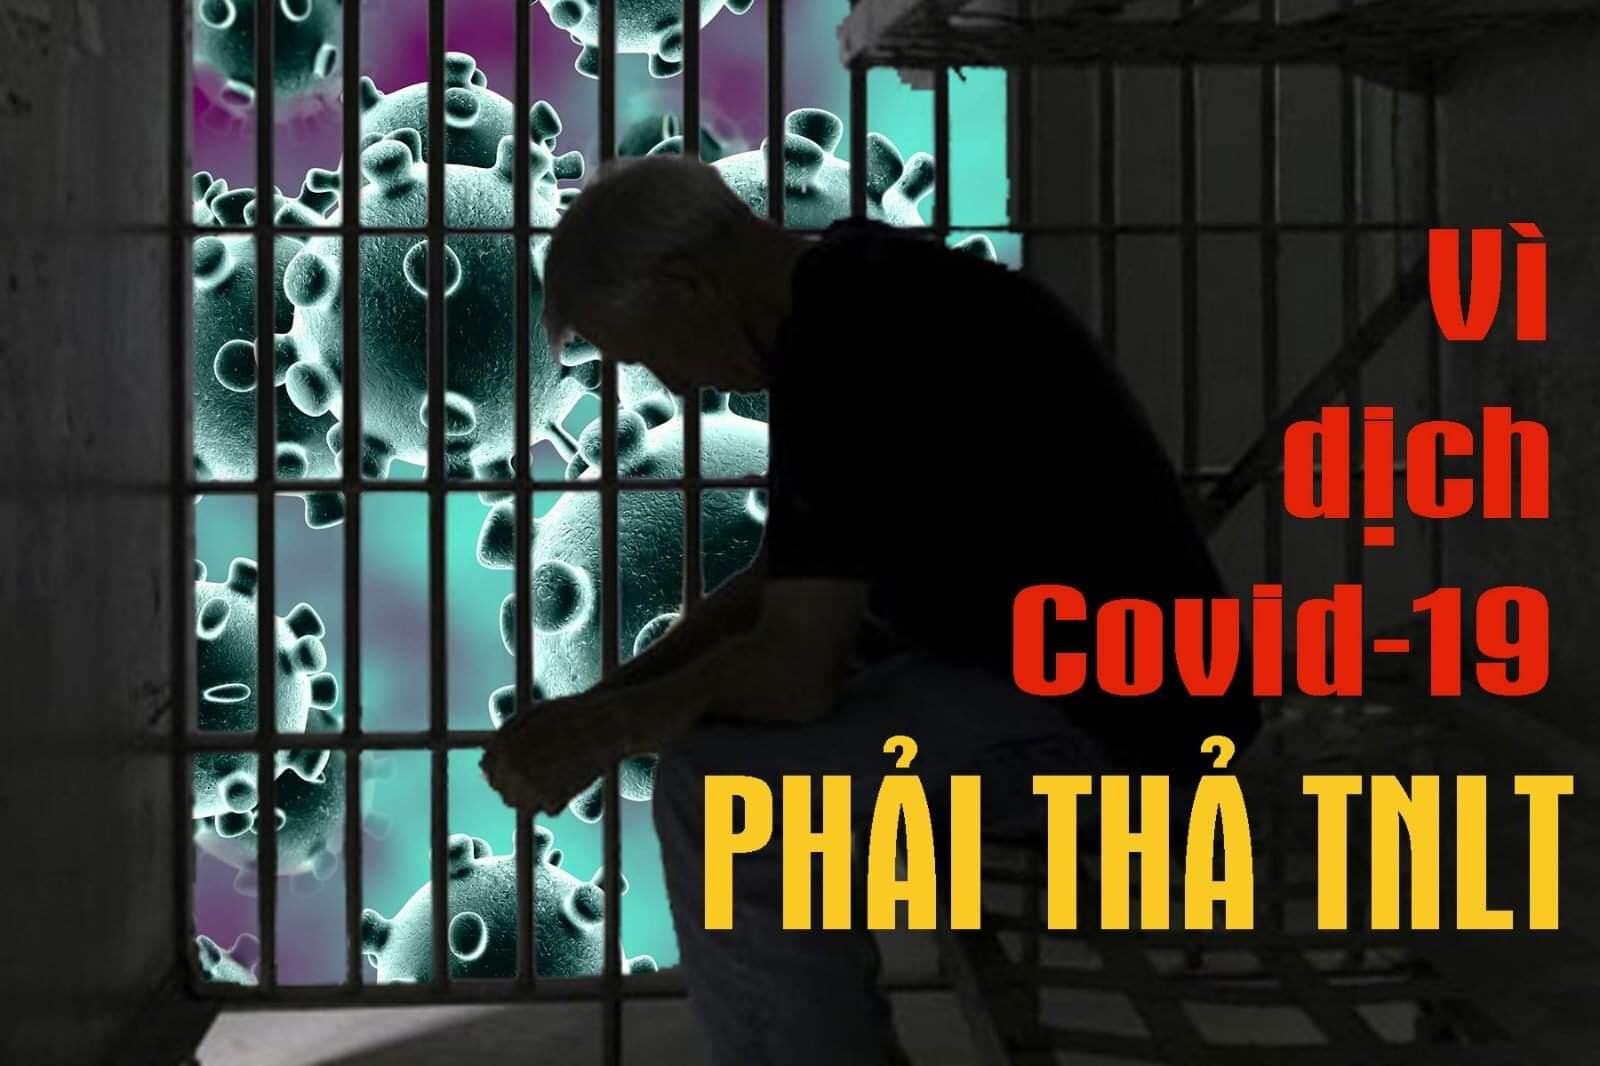 Vì dịch Covid - 19 Nhà nước phải trả tự do cho “tù nhân lương tâm”?